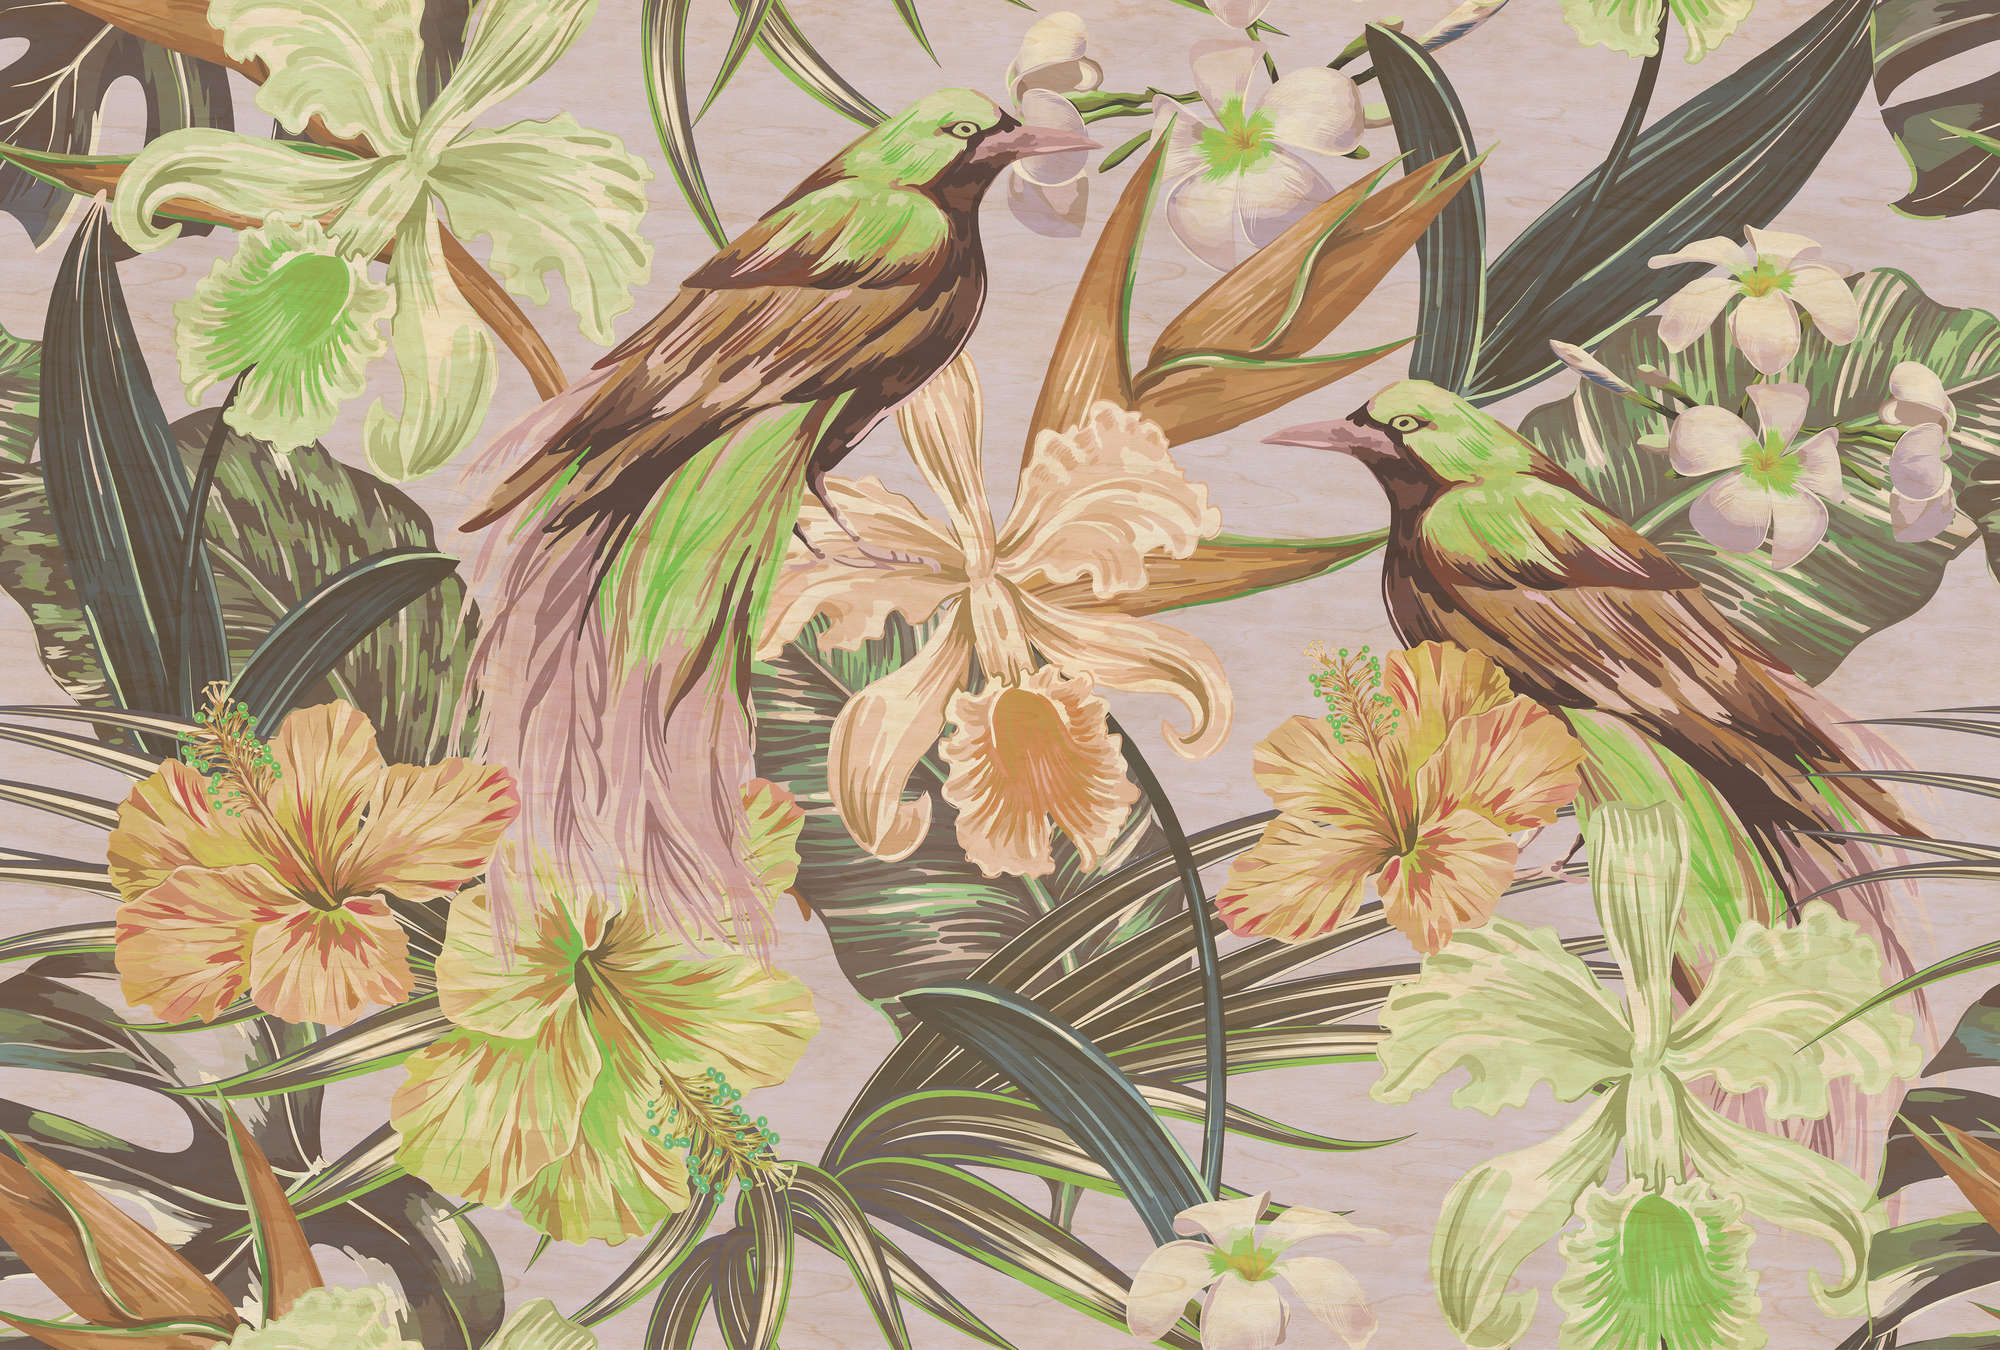             Uccelli esotici 2 - Fotomurali uccelli e piante esotiche - Texture a graffio - Beige, Verde | Vello liscio opaco
        